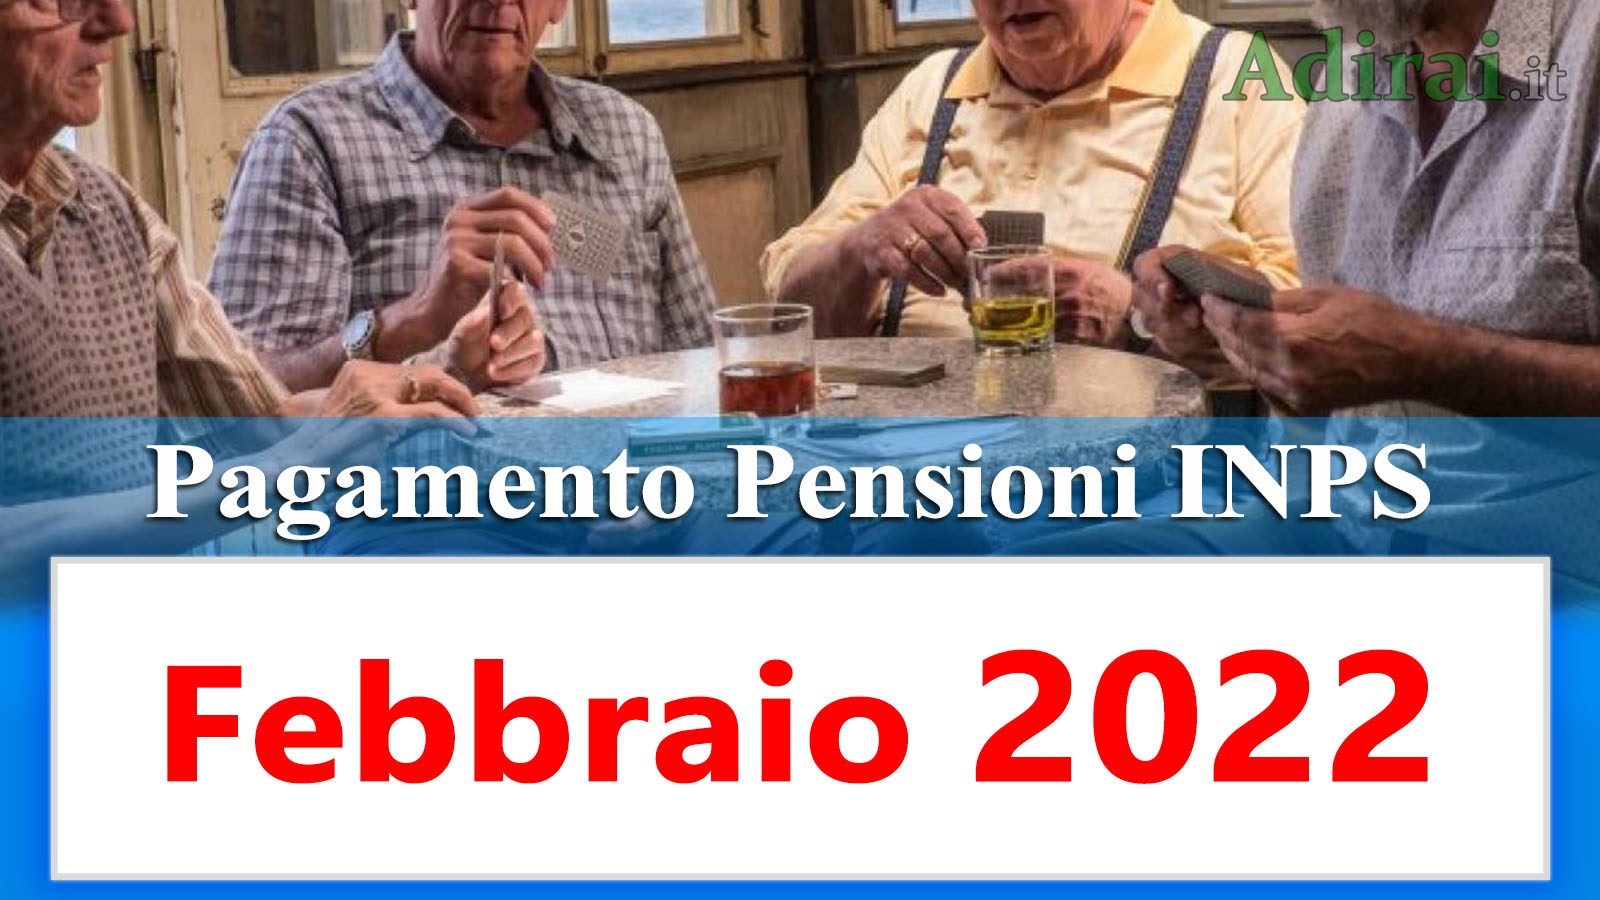 Pagamento pensioni febbraio 2022 in anticipo Calendario Inps